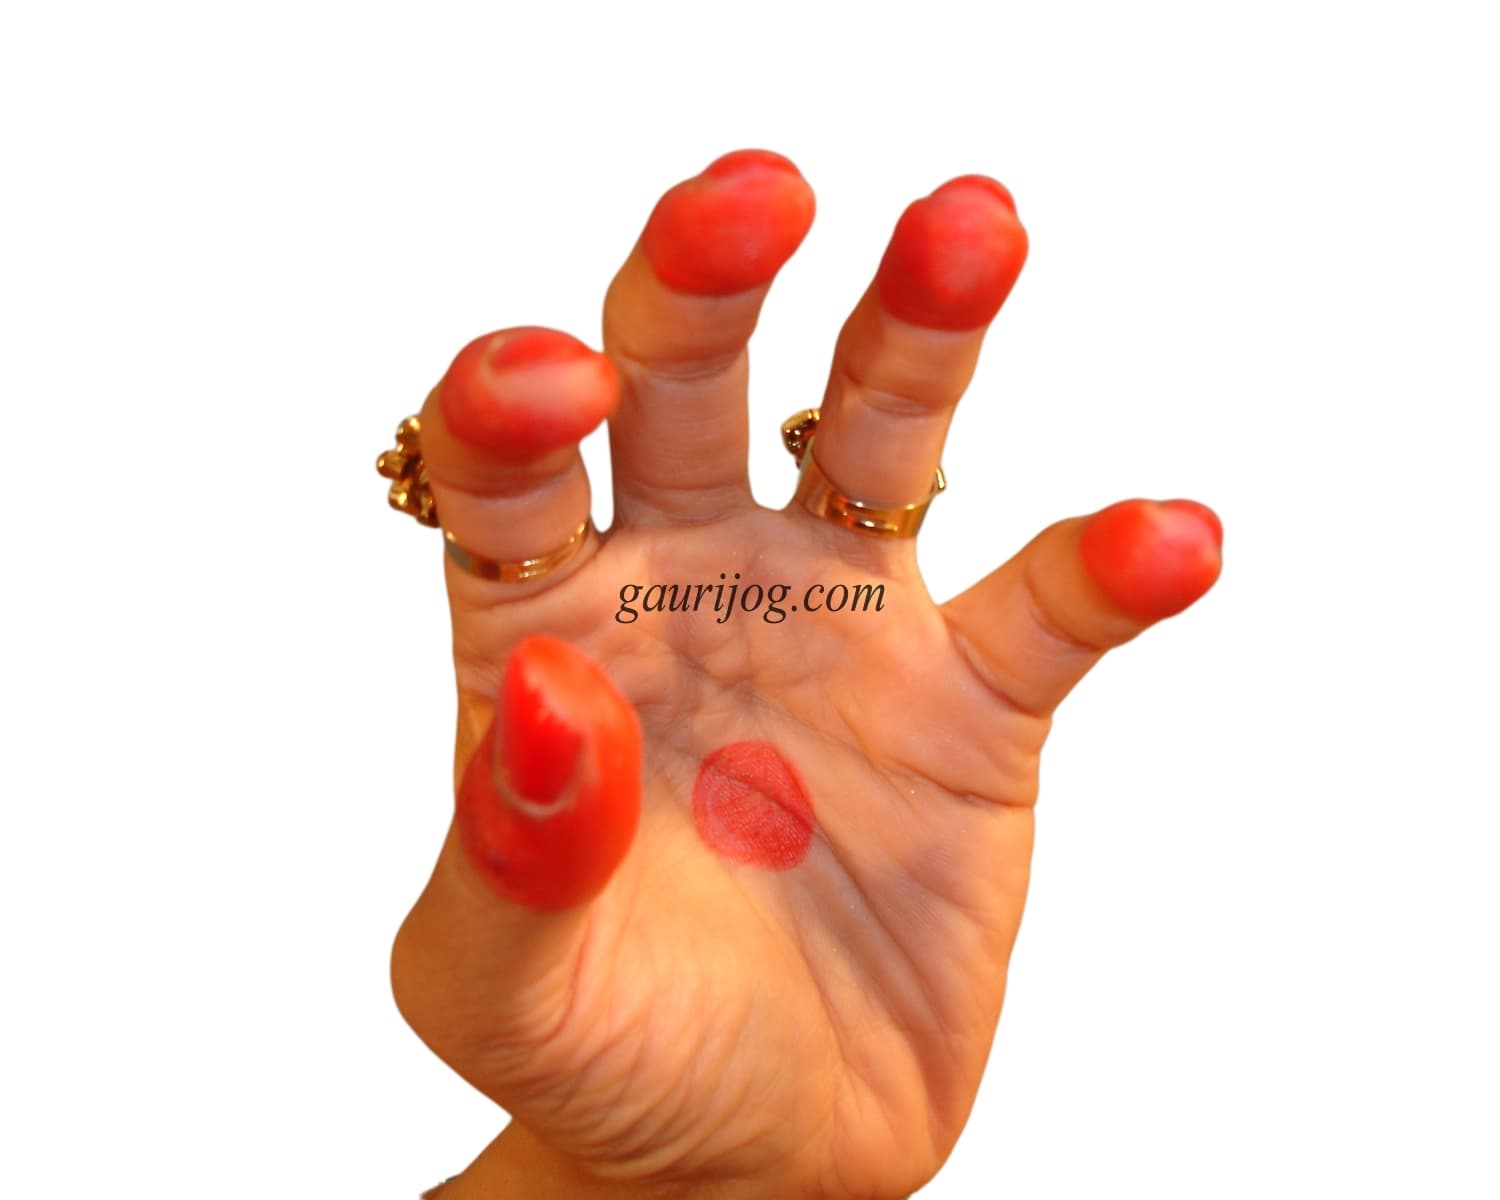 Sandanshya Hand Gesture by Gauri Jog